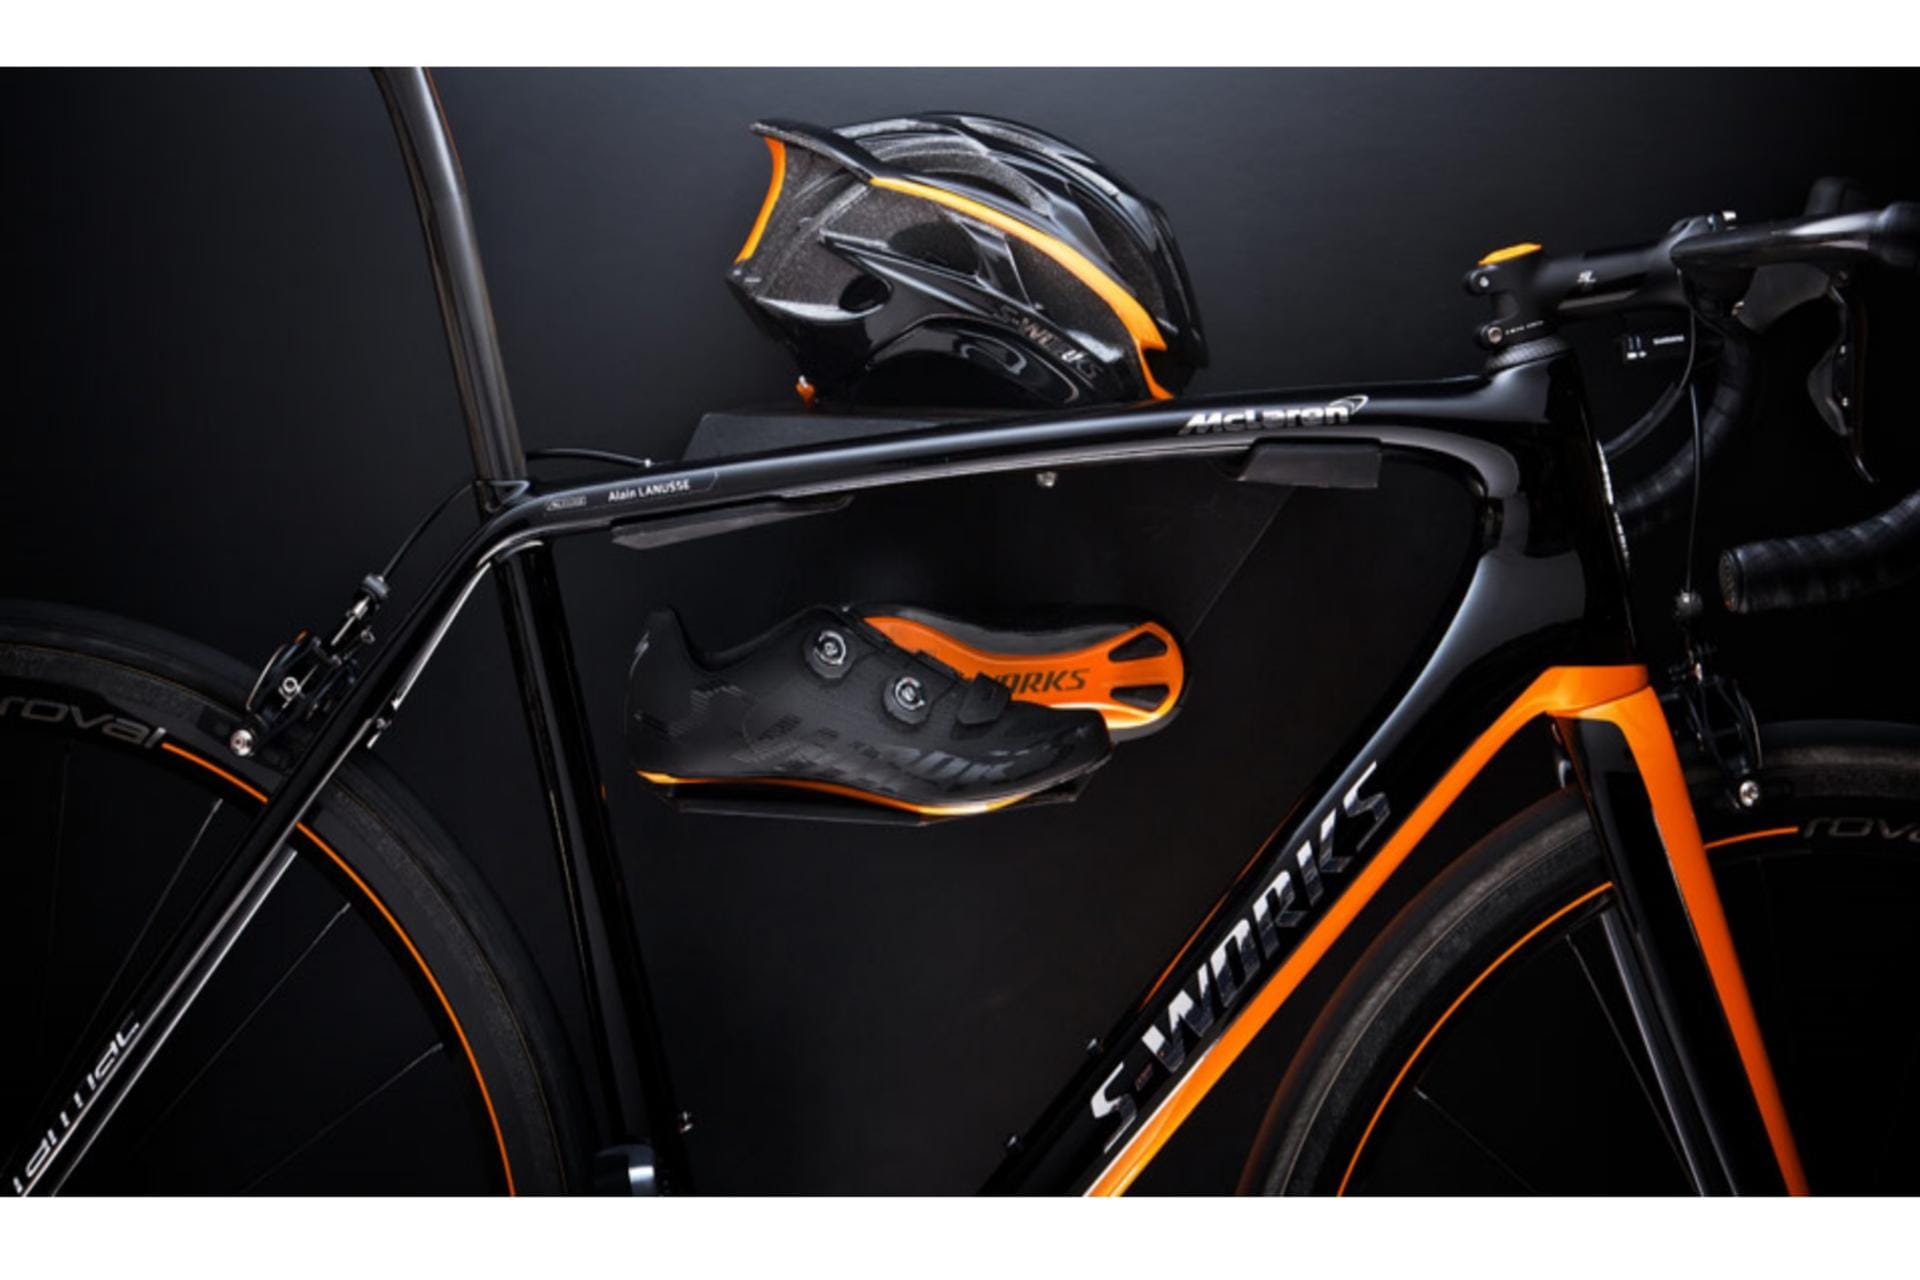 Autobauer bieten auch rasante Kreationen auf zwei Rädern. Eines der teuerten Modelle ist das Bike, das Fahrradhersteller Specialized 2014 in Kooperation mit der Rennwagenschmiede McLaren auf den Markt brachte. Es kostete 20.000 Euro. Nur 250 Fahrräder wurden gebaut.